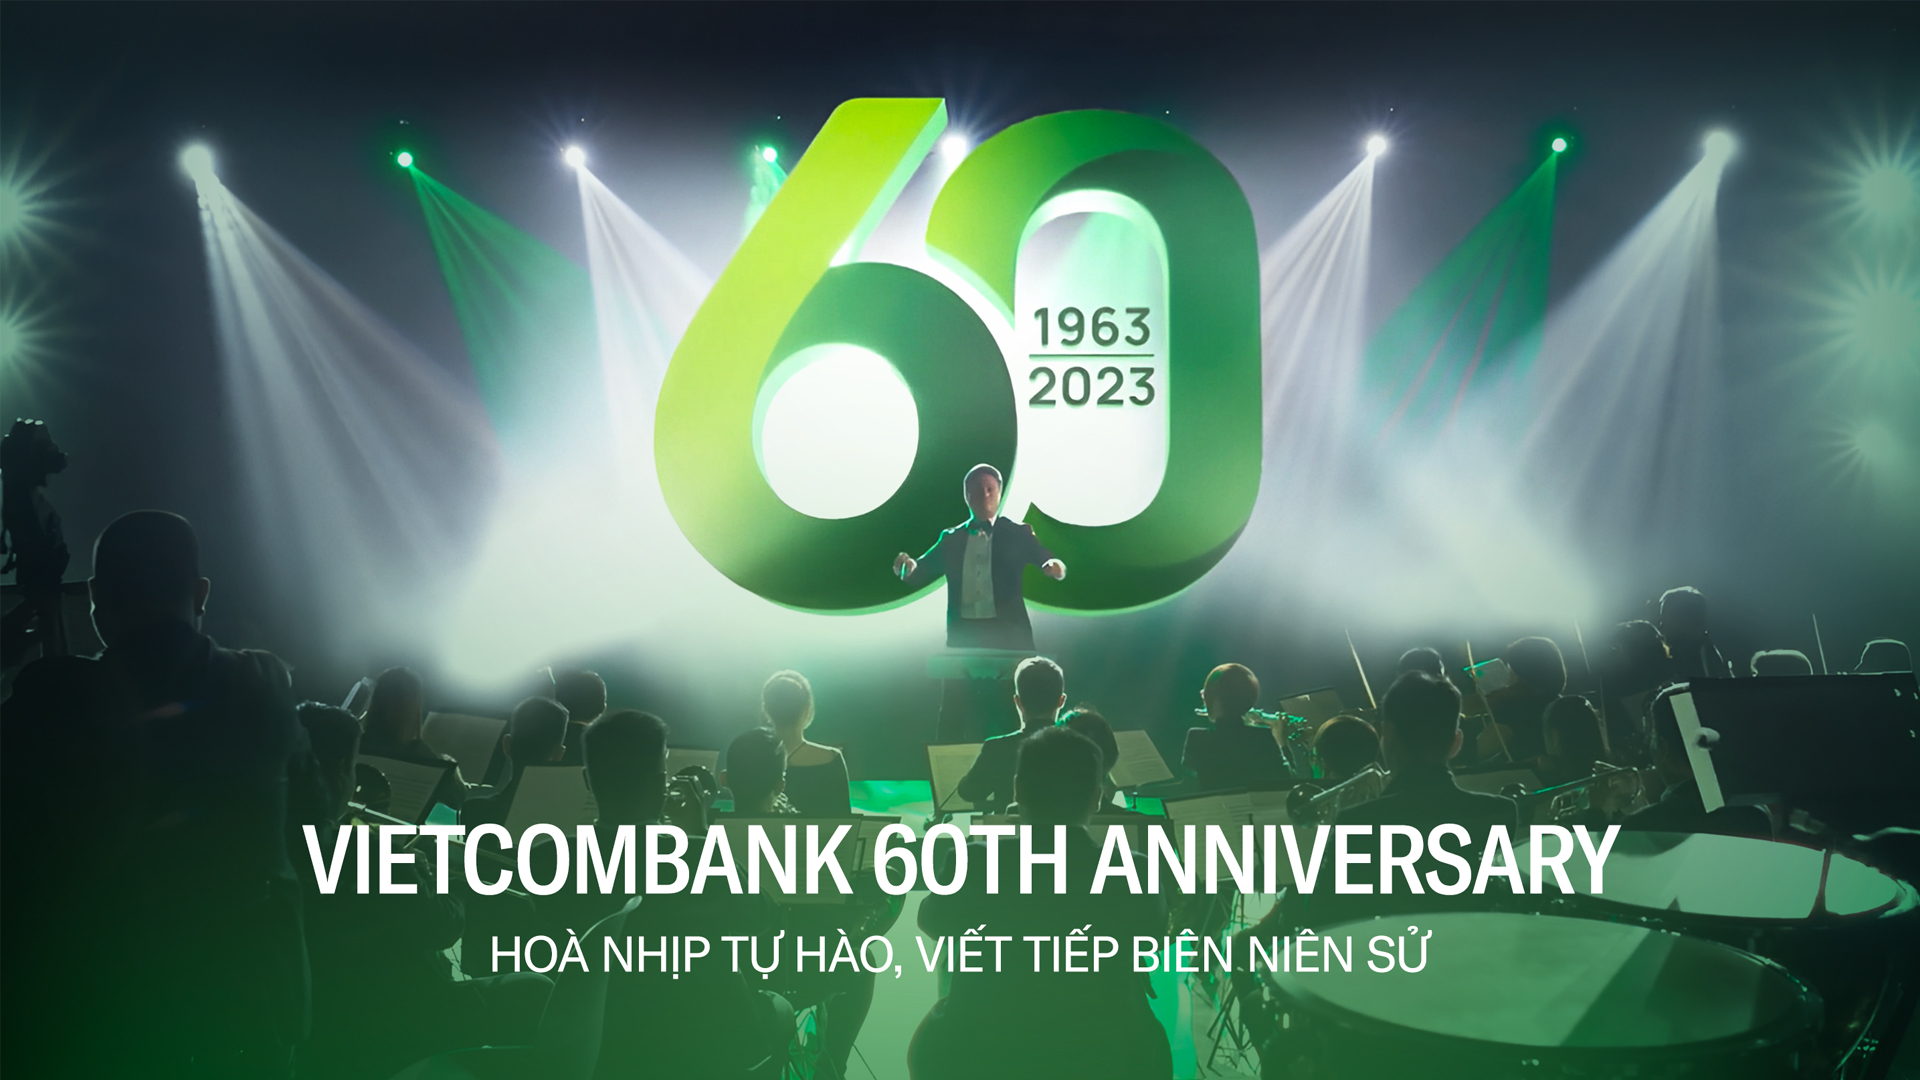 Vietcombank 60th anniversary